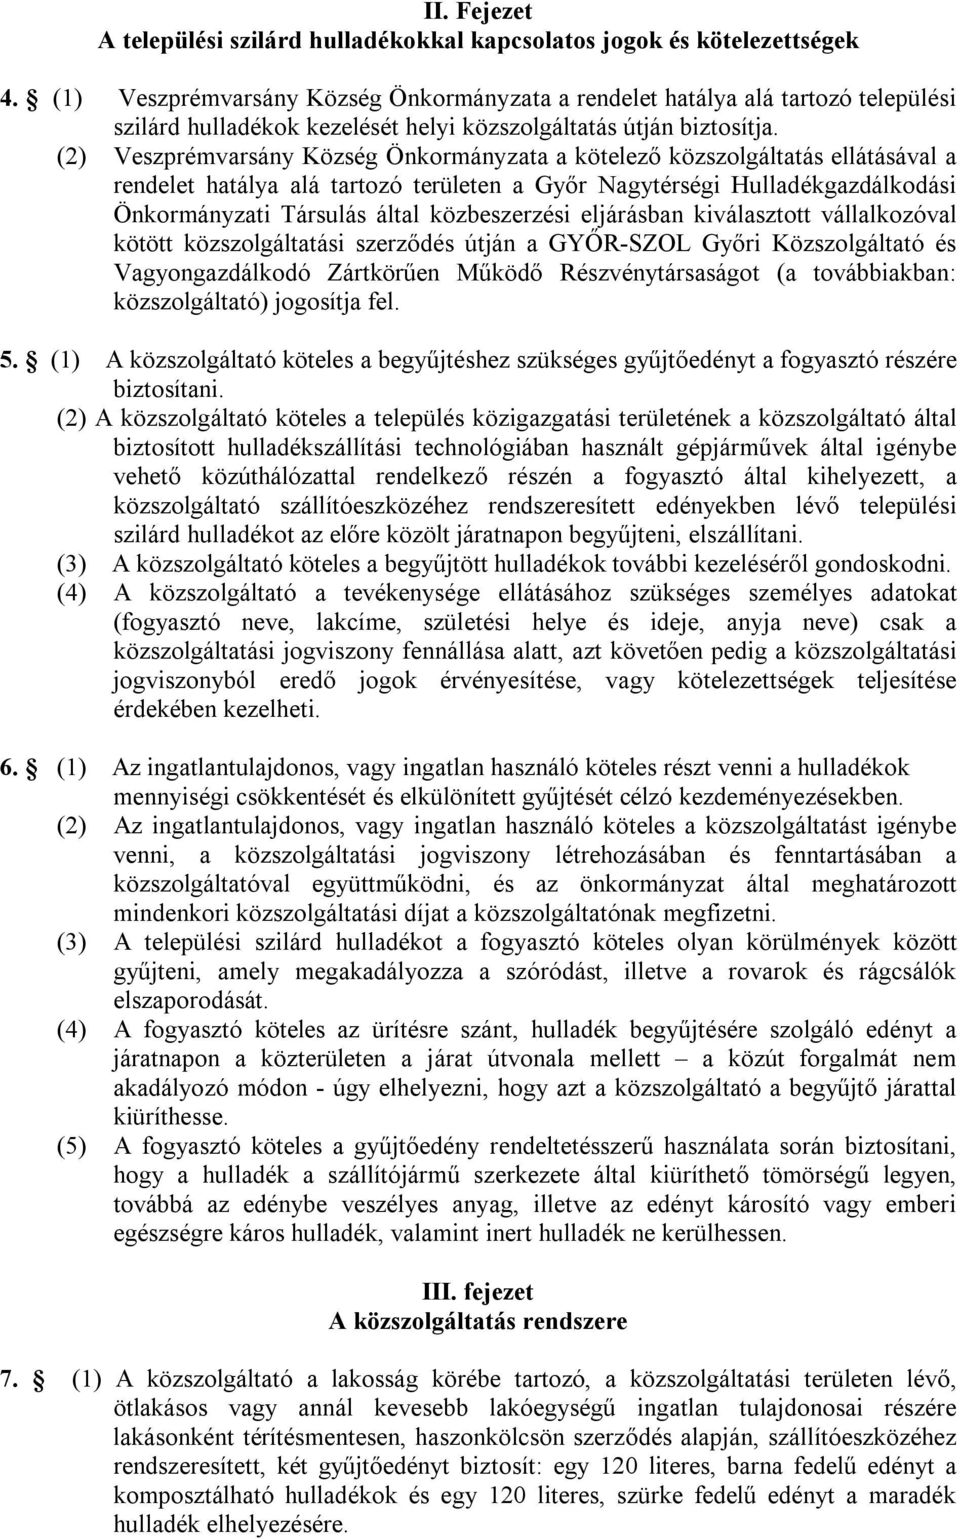 (2) Veszprémvarsány Község Önkormányzata a kötelező közszolgáltatás ellátásával a rendelet hatálya alá tartozó területen a Győr Nagytérségi Hulladékgazdálkodási Önkormányzati Társulás által